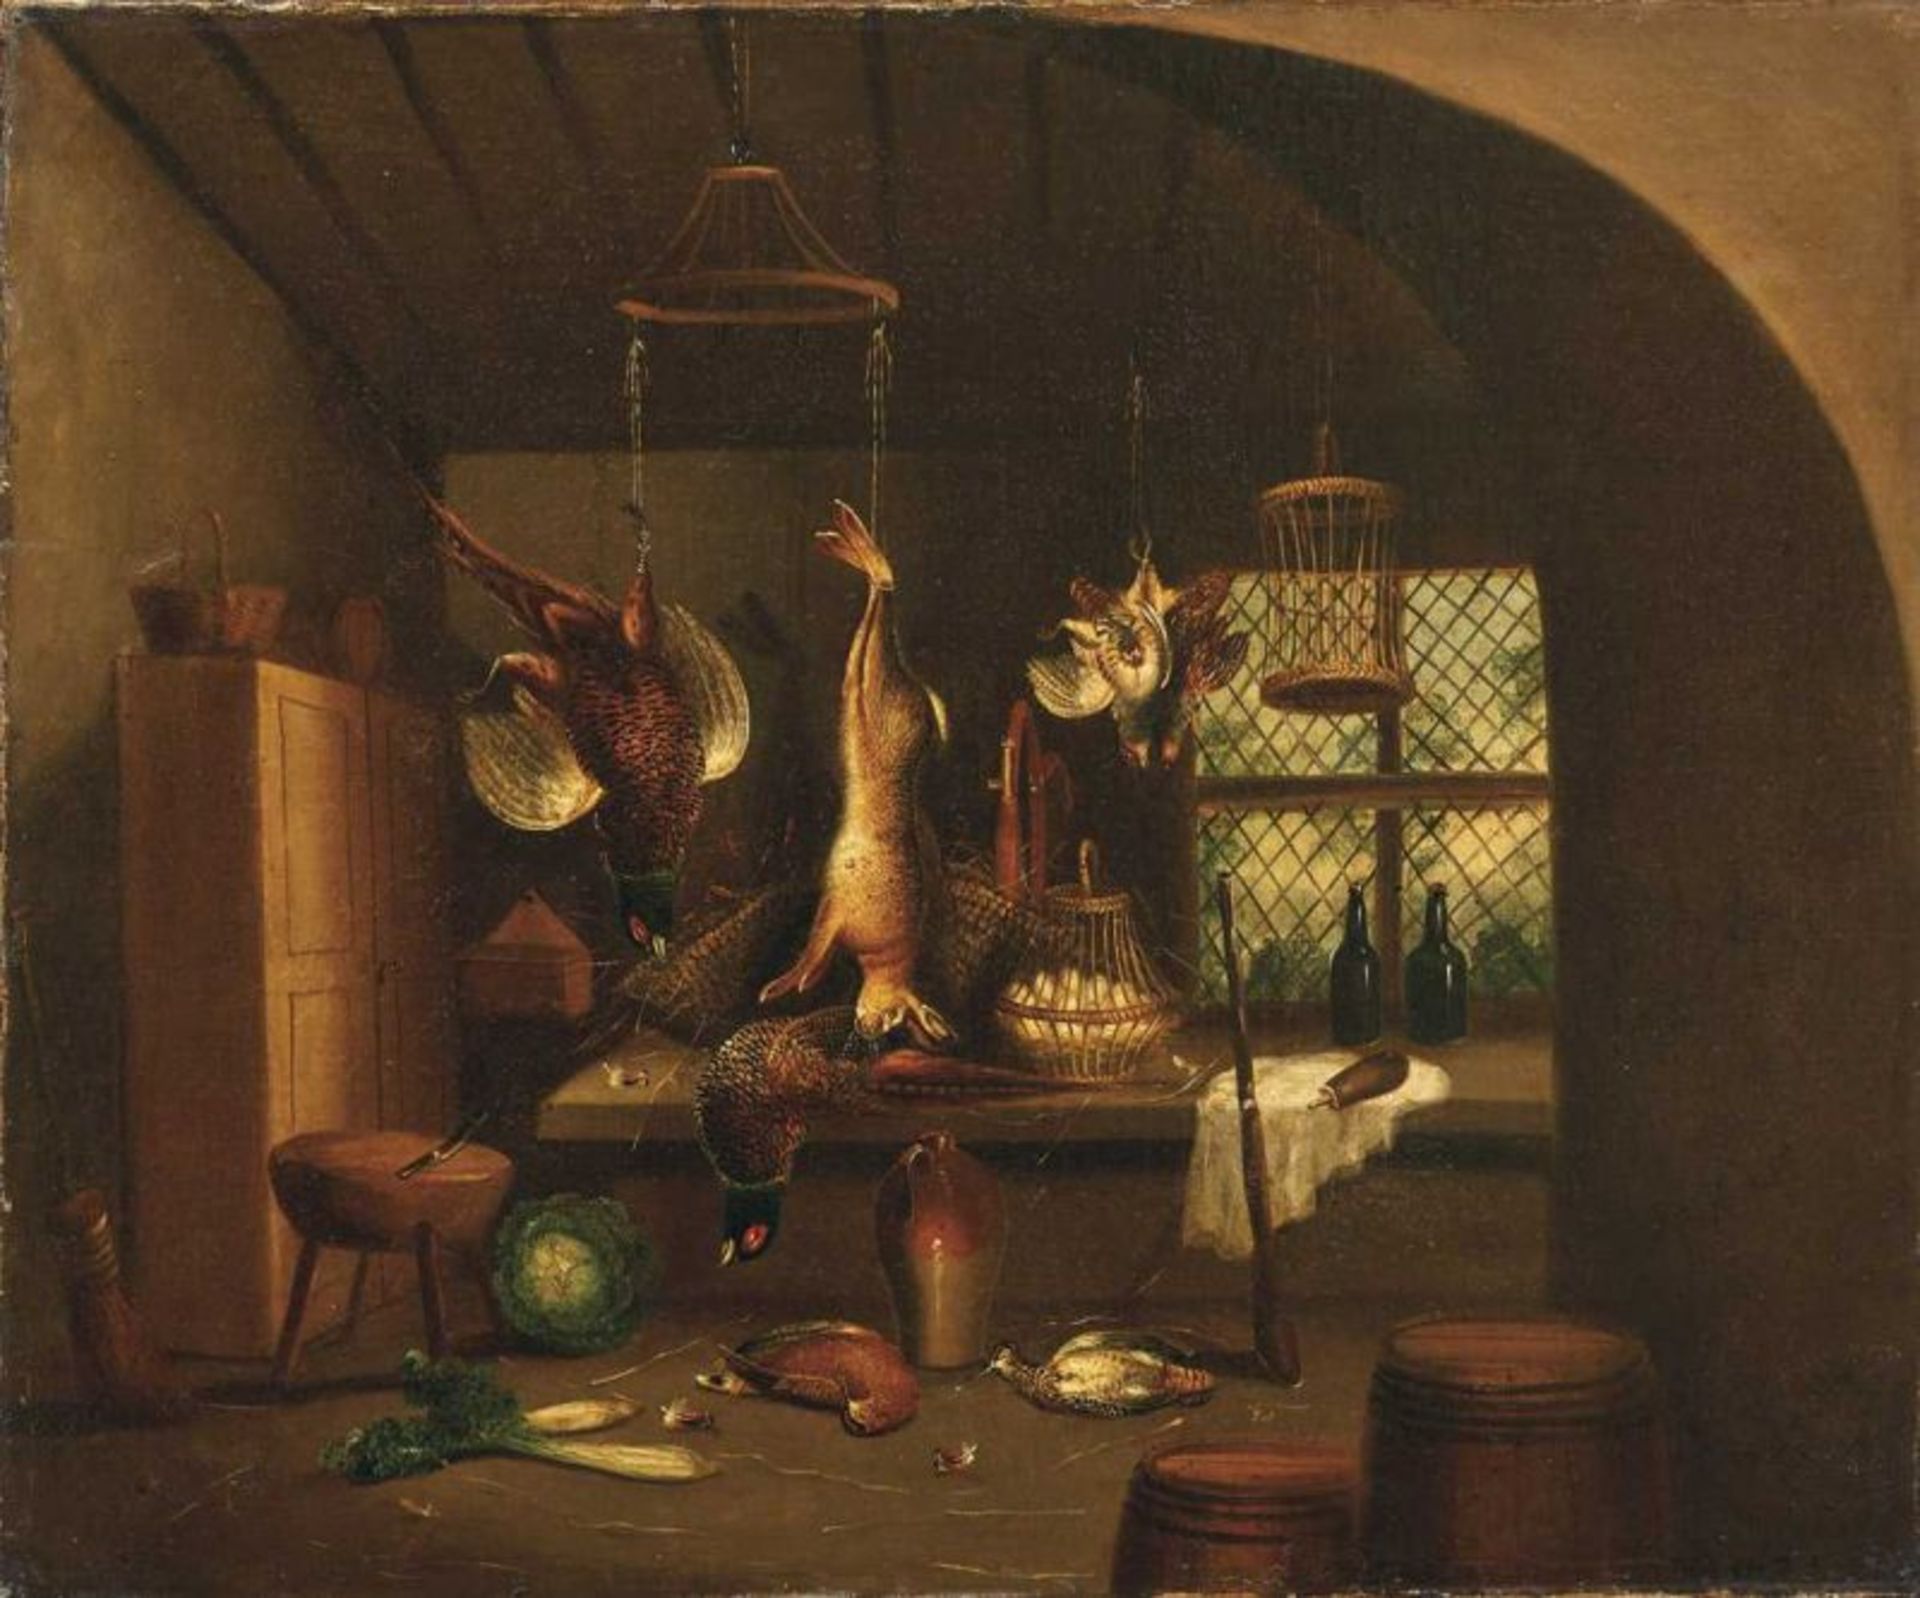 Kücheninterieur Holland oder Norddeutschland, 18. Jh. Vorratskammer mit aufgehängtem Hasen, erlegten